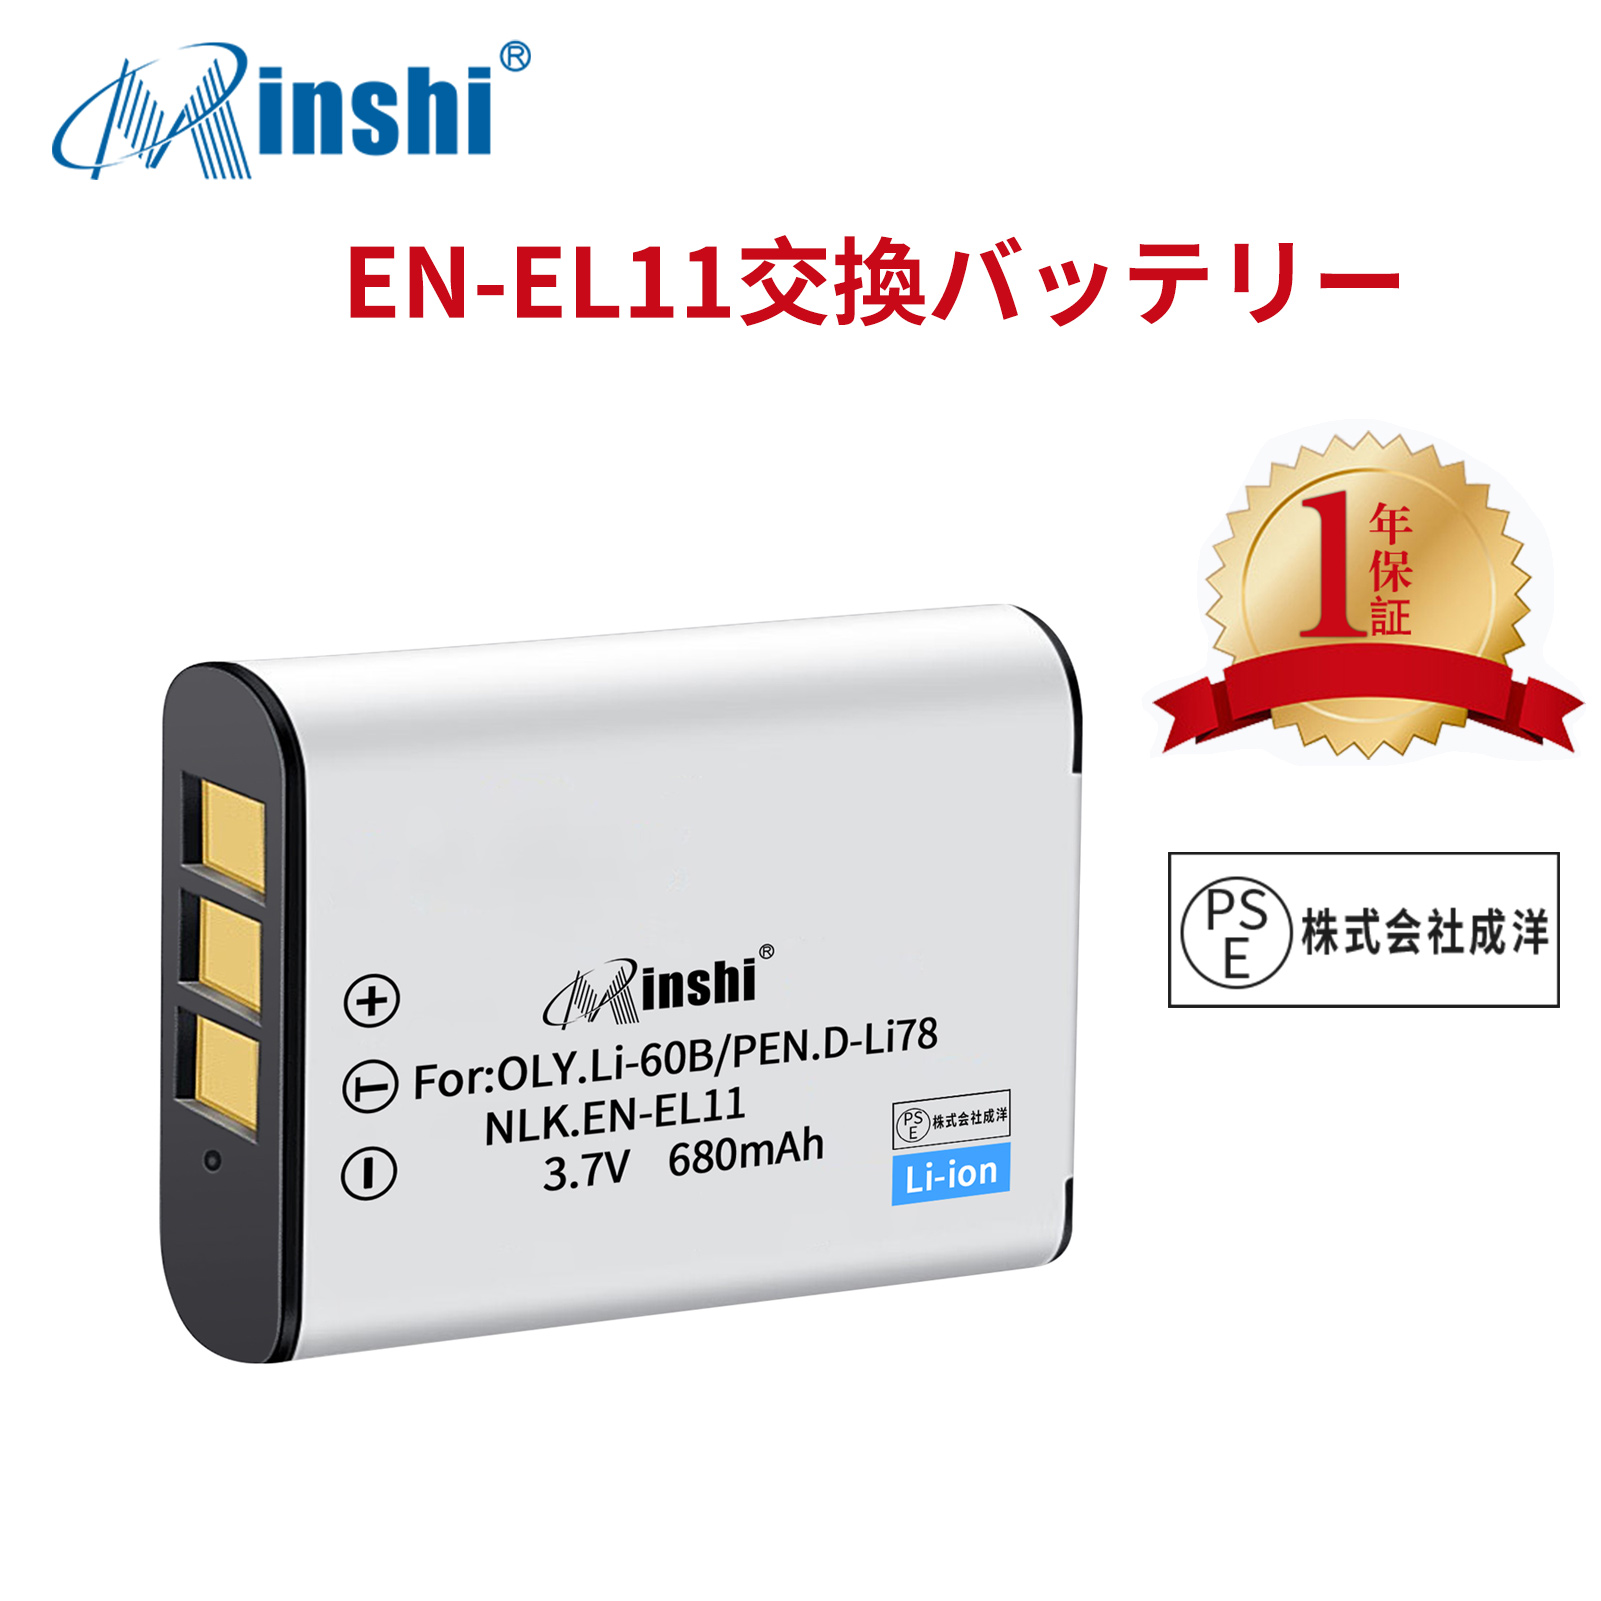 【1年保証】minshi NIKON DB-L70 EN-EL11 【680mAh 3.7V】PSE認定済 高品質交換用バッテリー オリジナル充電器との互換性がない